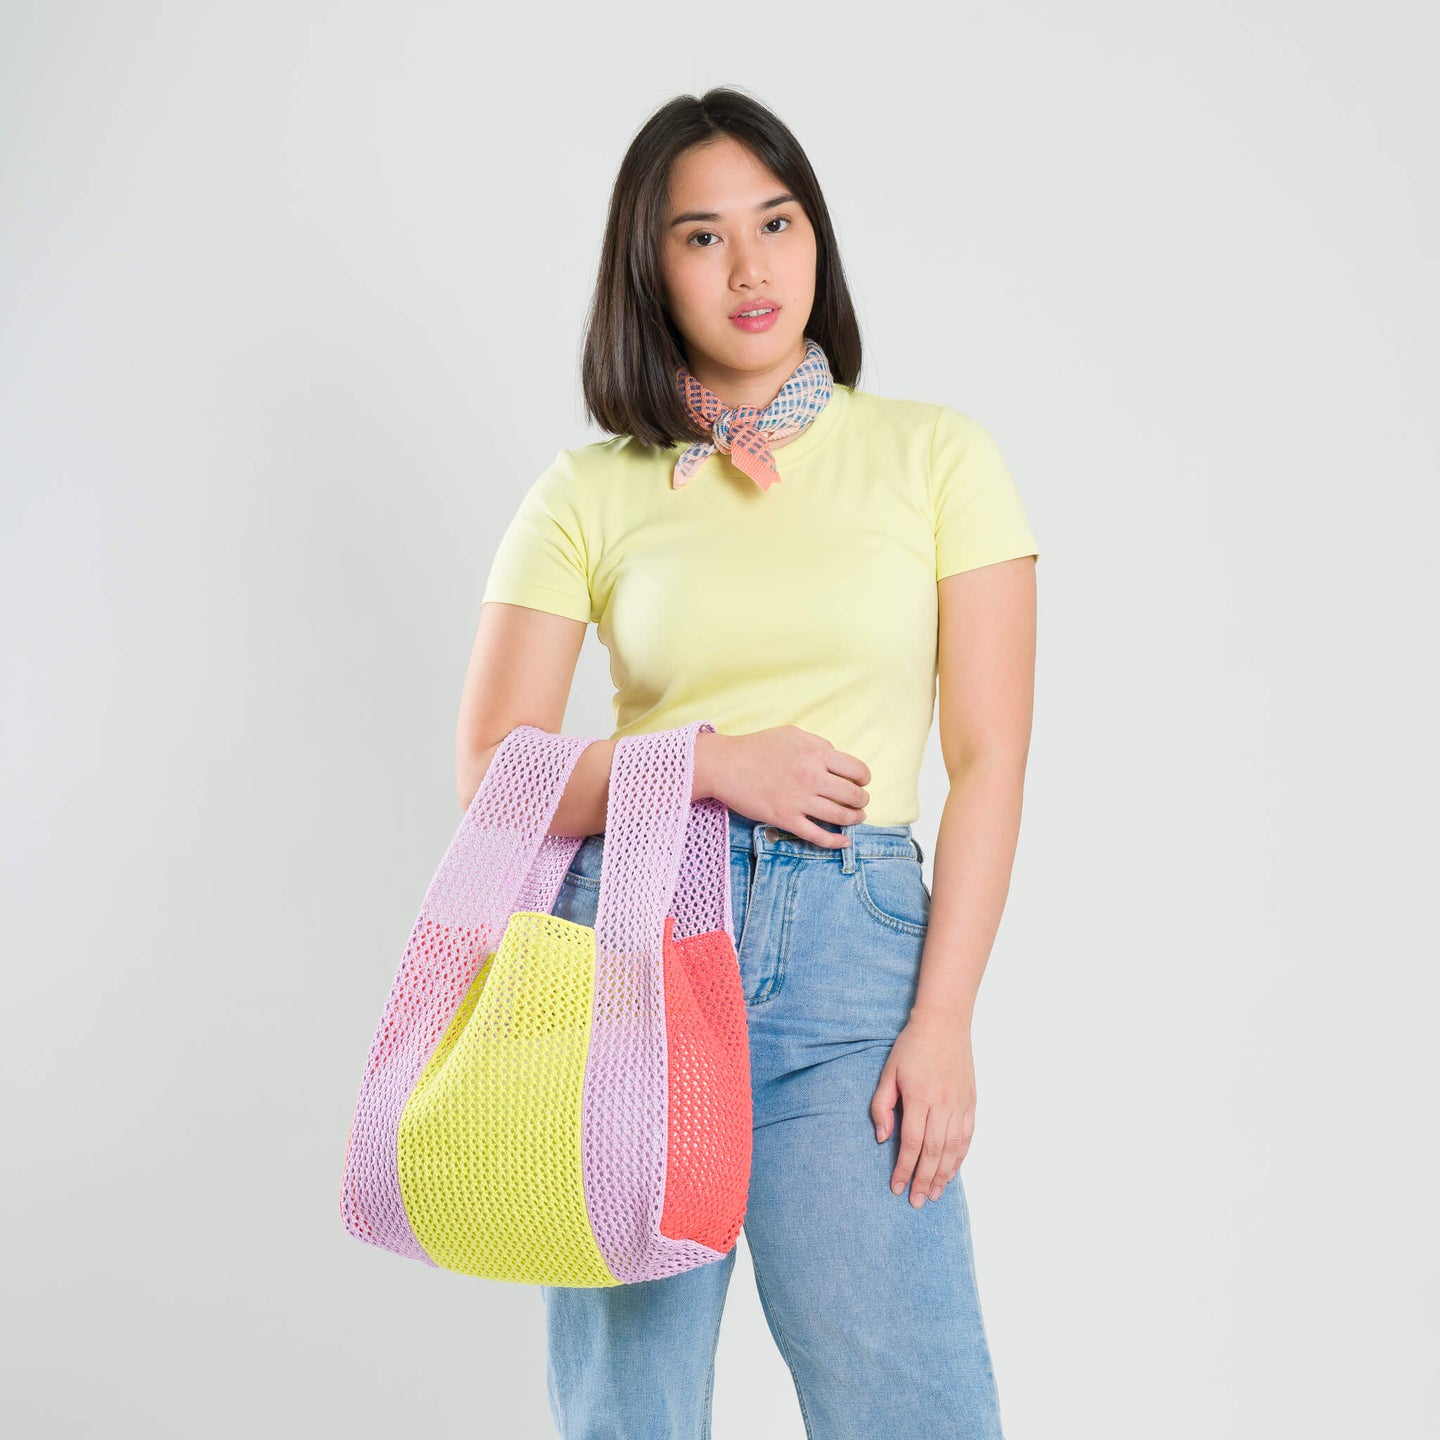 Raffia Crochet T-Shirt Knit Bag Lightweight Beach Bag